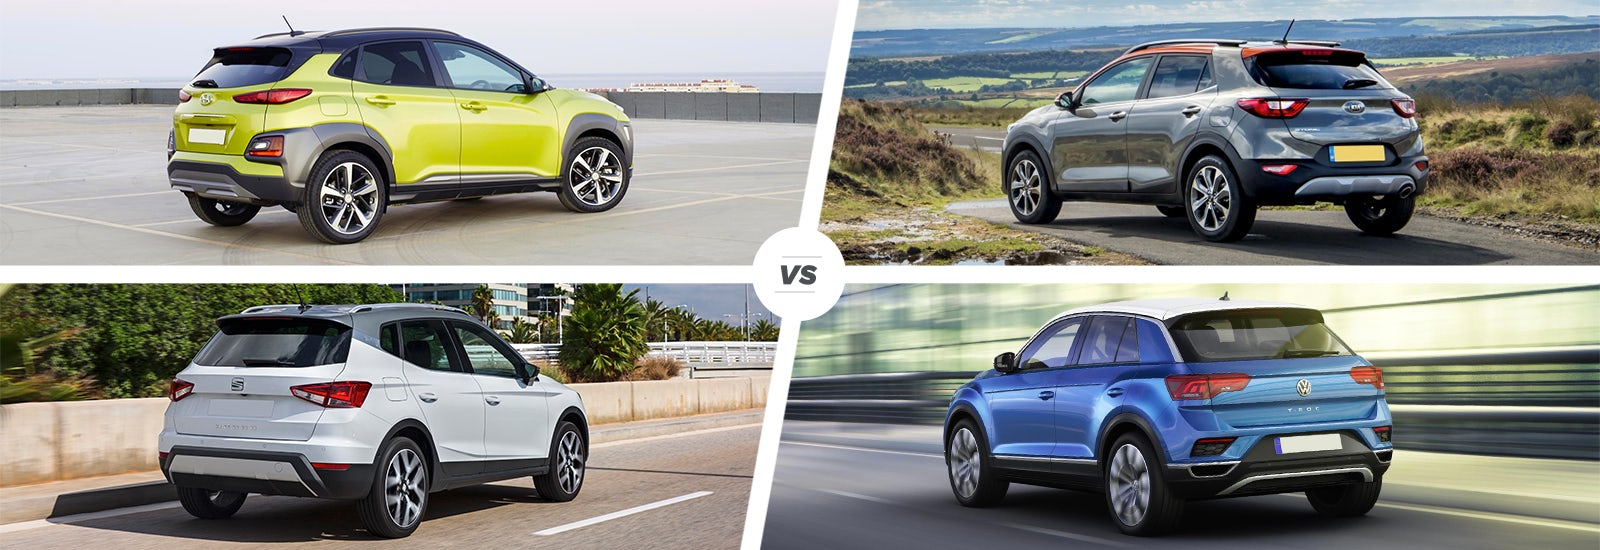 Hyundai Kona vs Kia Stonic vs SEAT Arona vs VW TRoc carwow